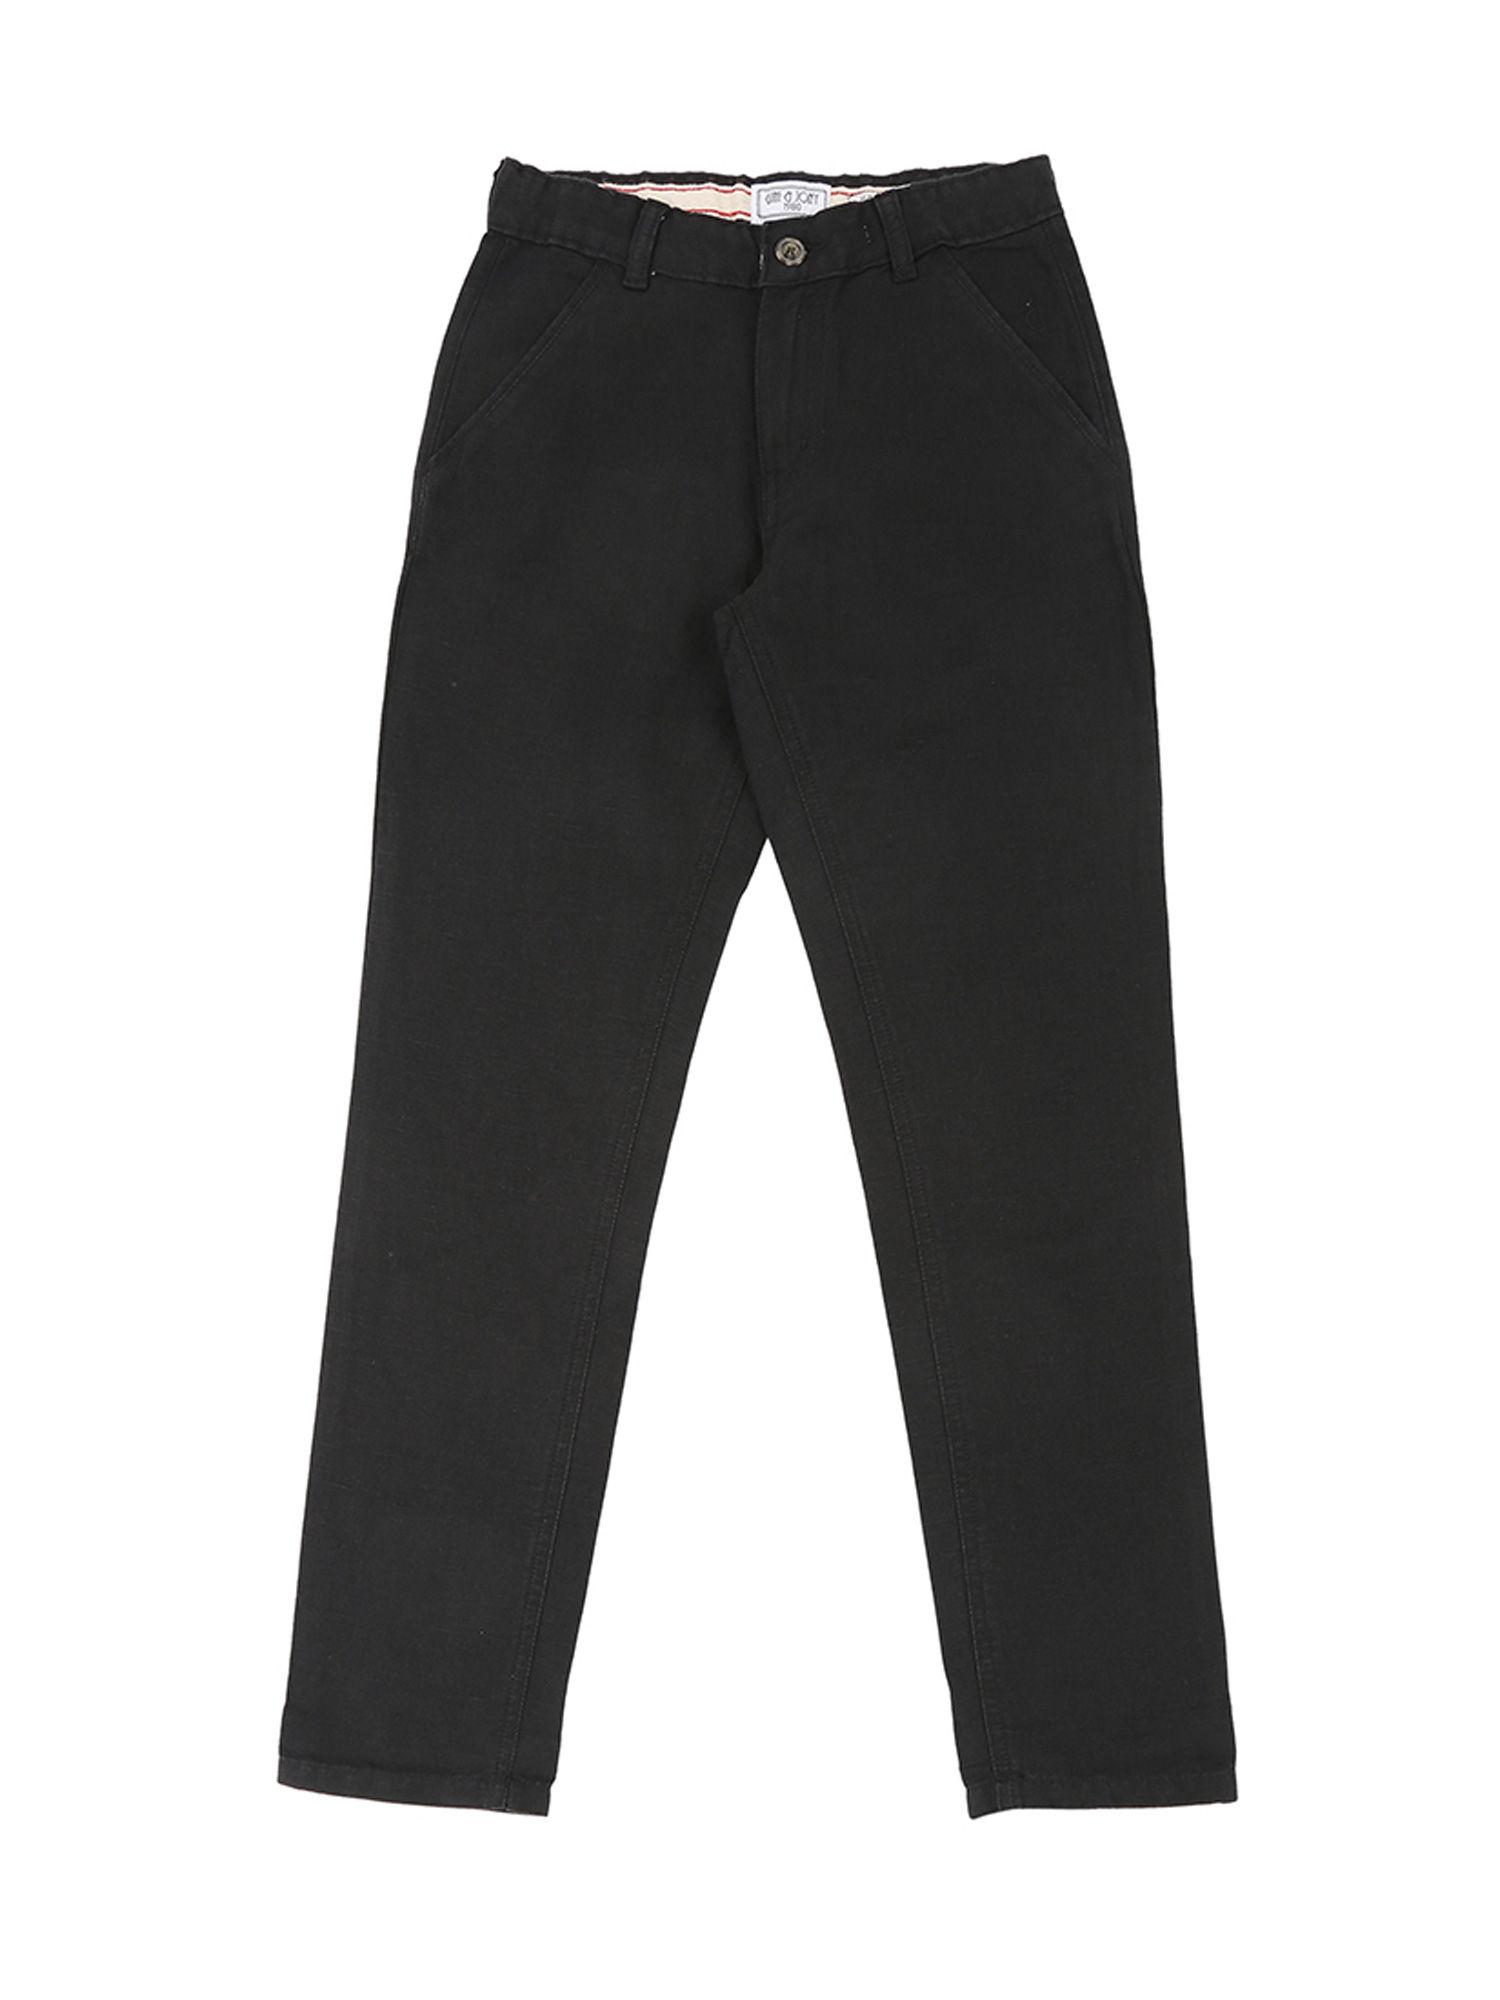 black-cotton-linen-trouser